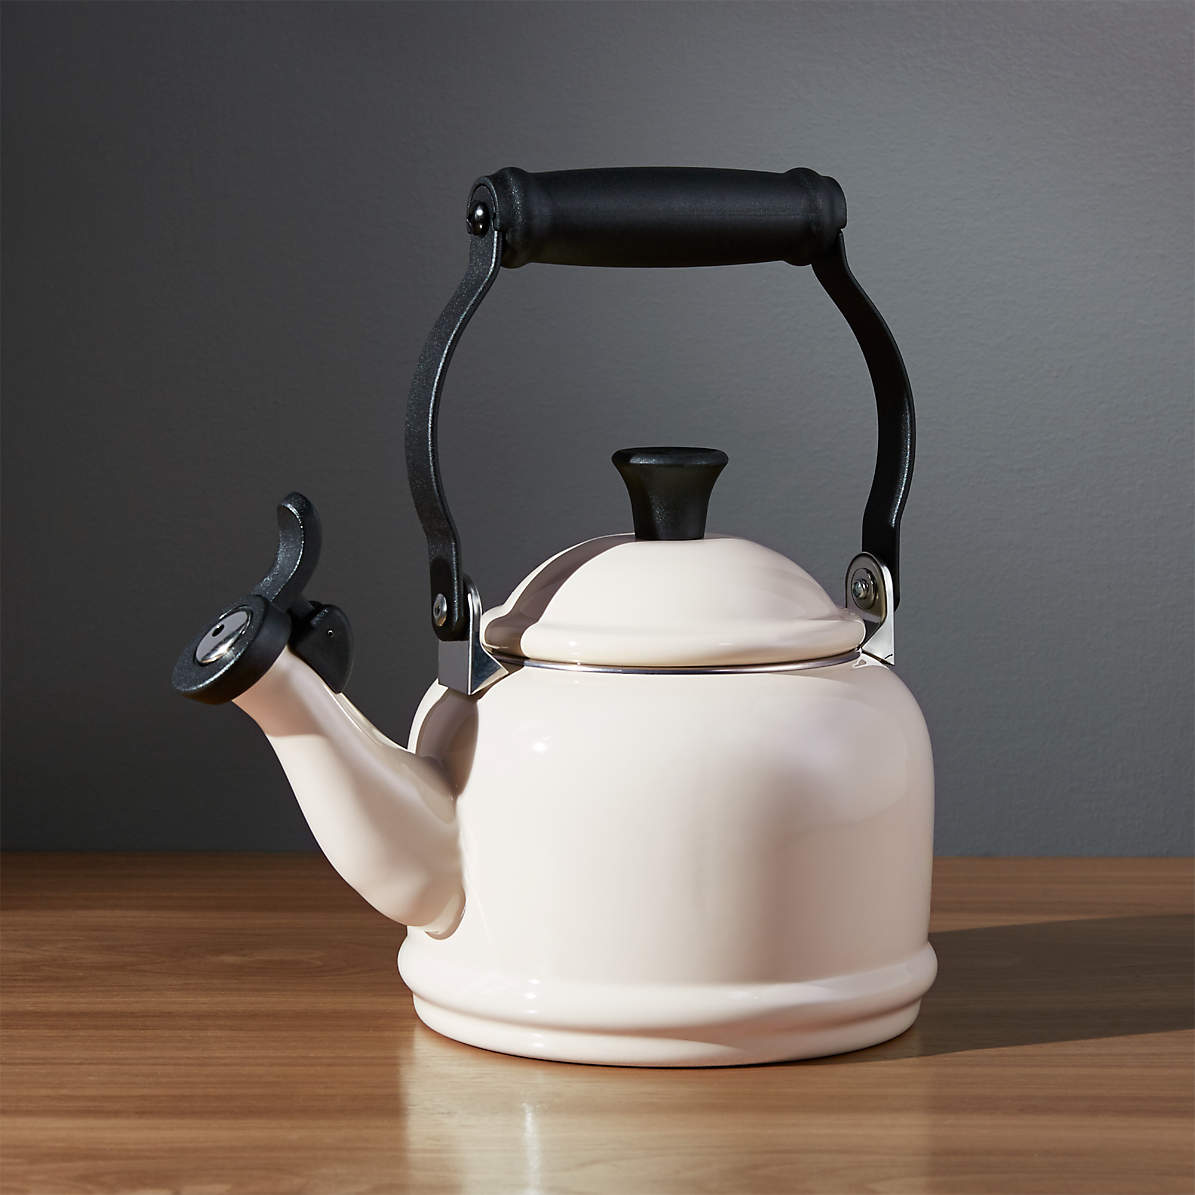 Чайник кремовый. Чайник Solis Tea kettle Classic. Чайник kettle Classic Mr 1320. Чайник cozy Home. Creuset чайник со свистком Traditional kettle.